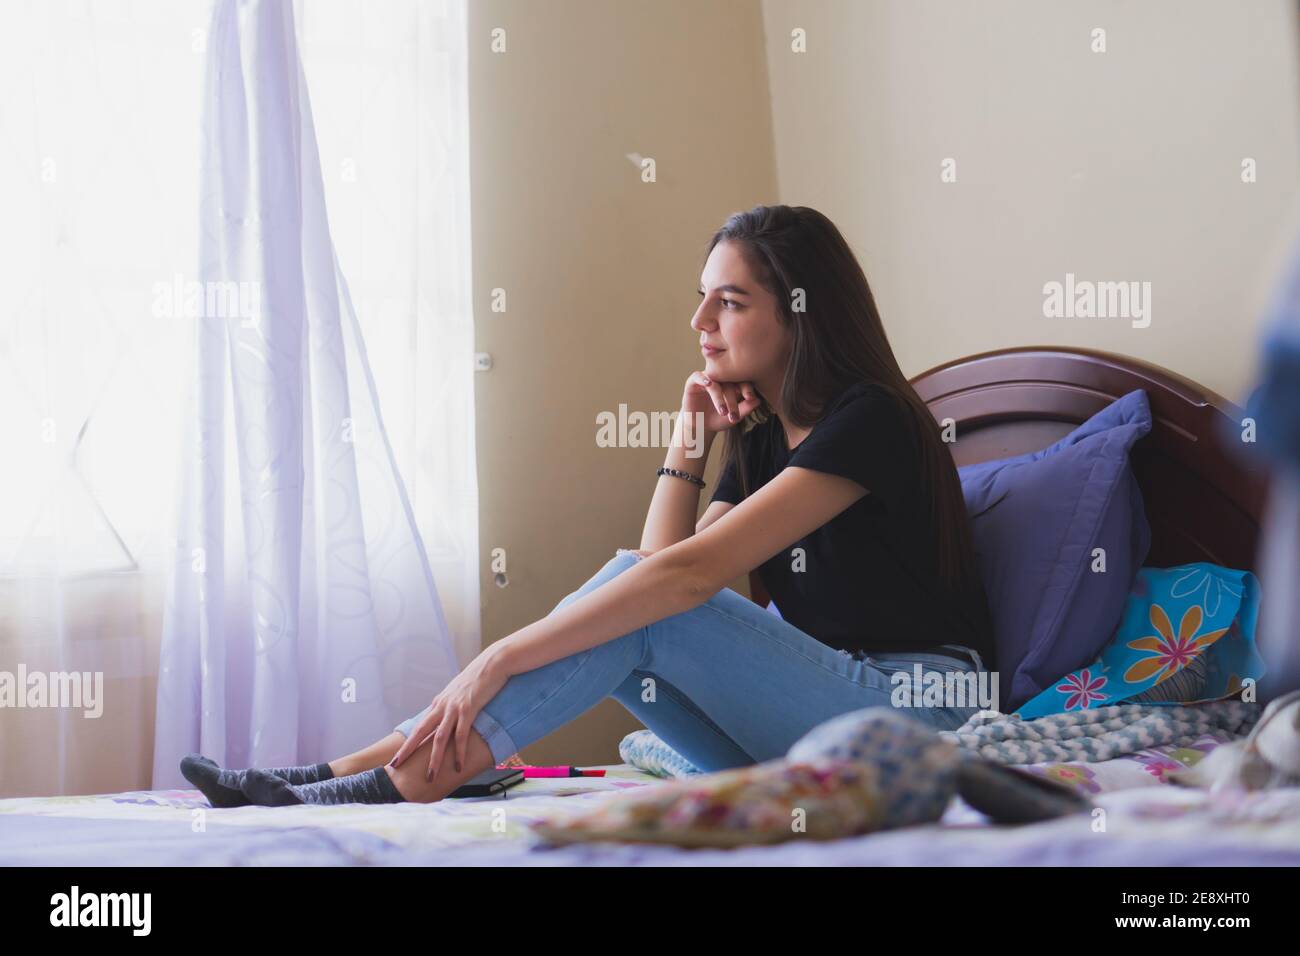 Junge Frau mit einer schönen Zeit. In seinem Zimmer erinnern glückliche Momente. Stockfoto